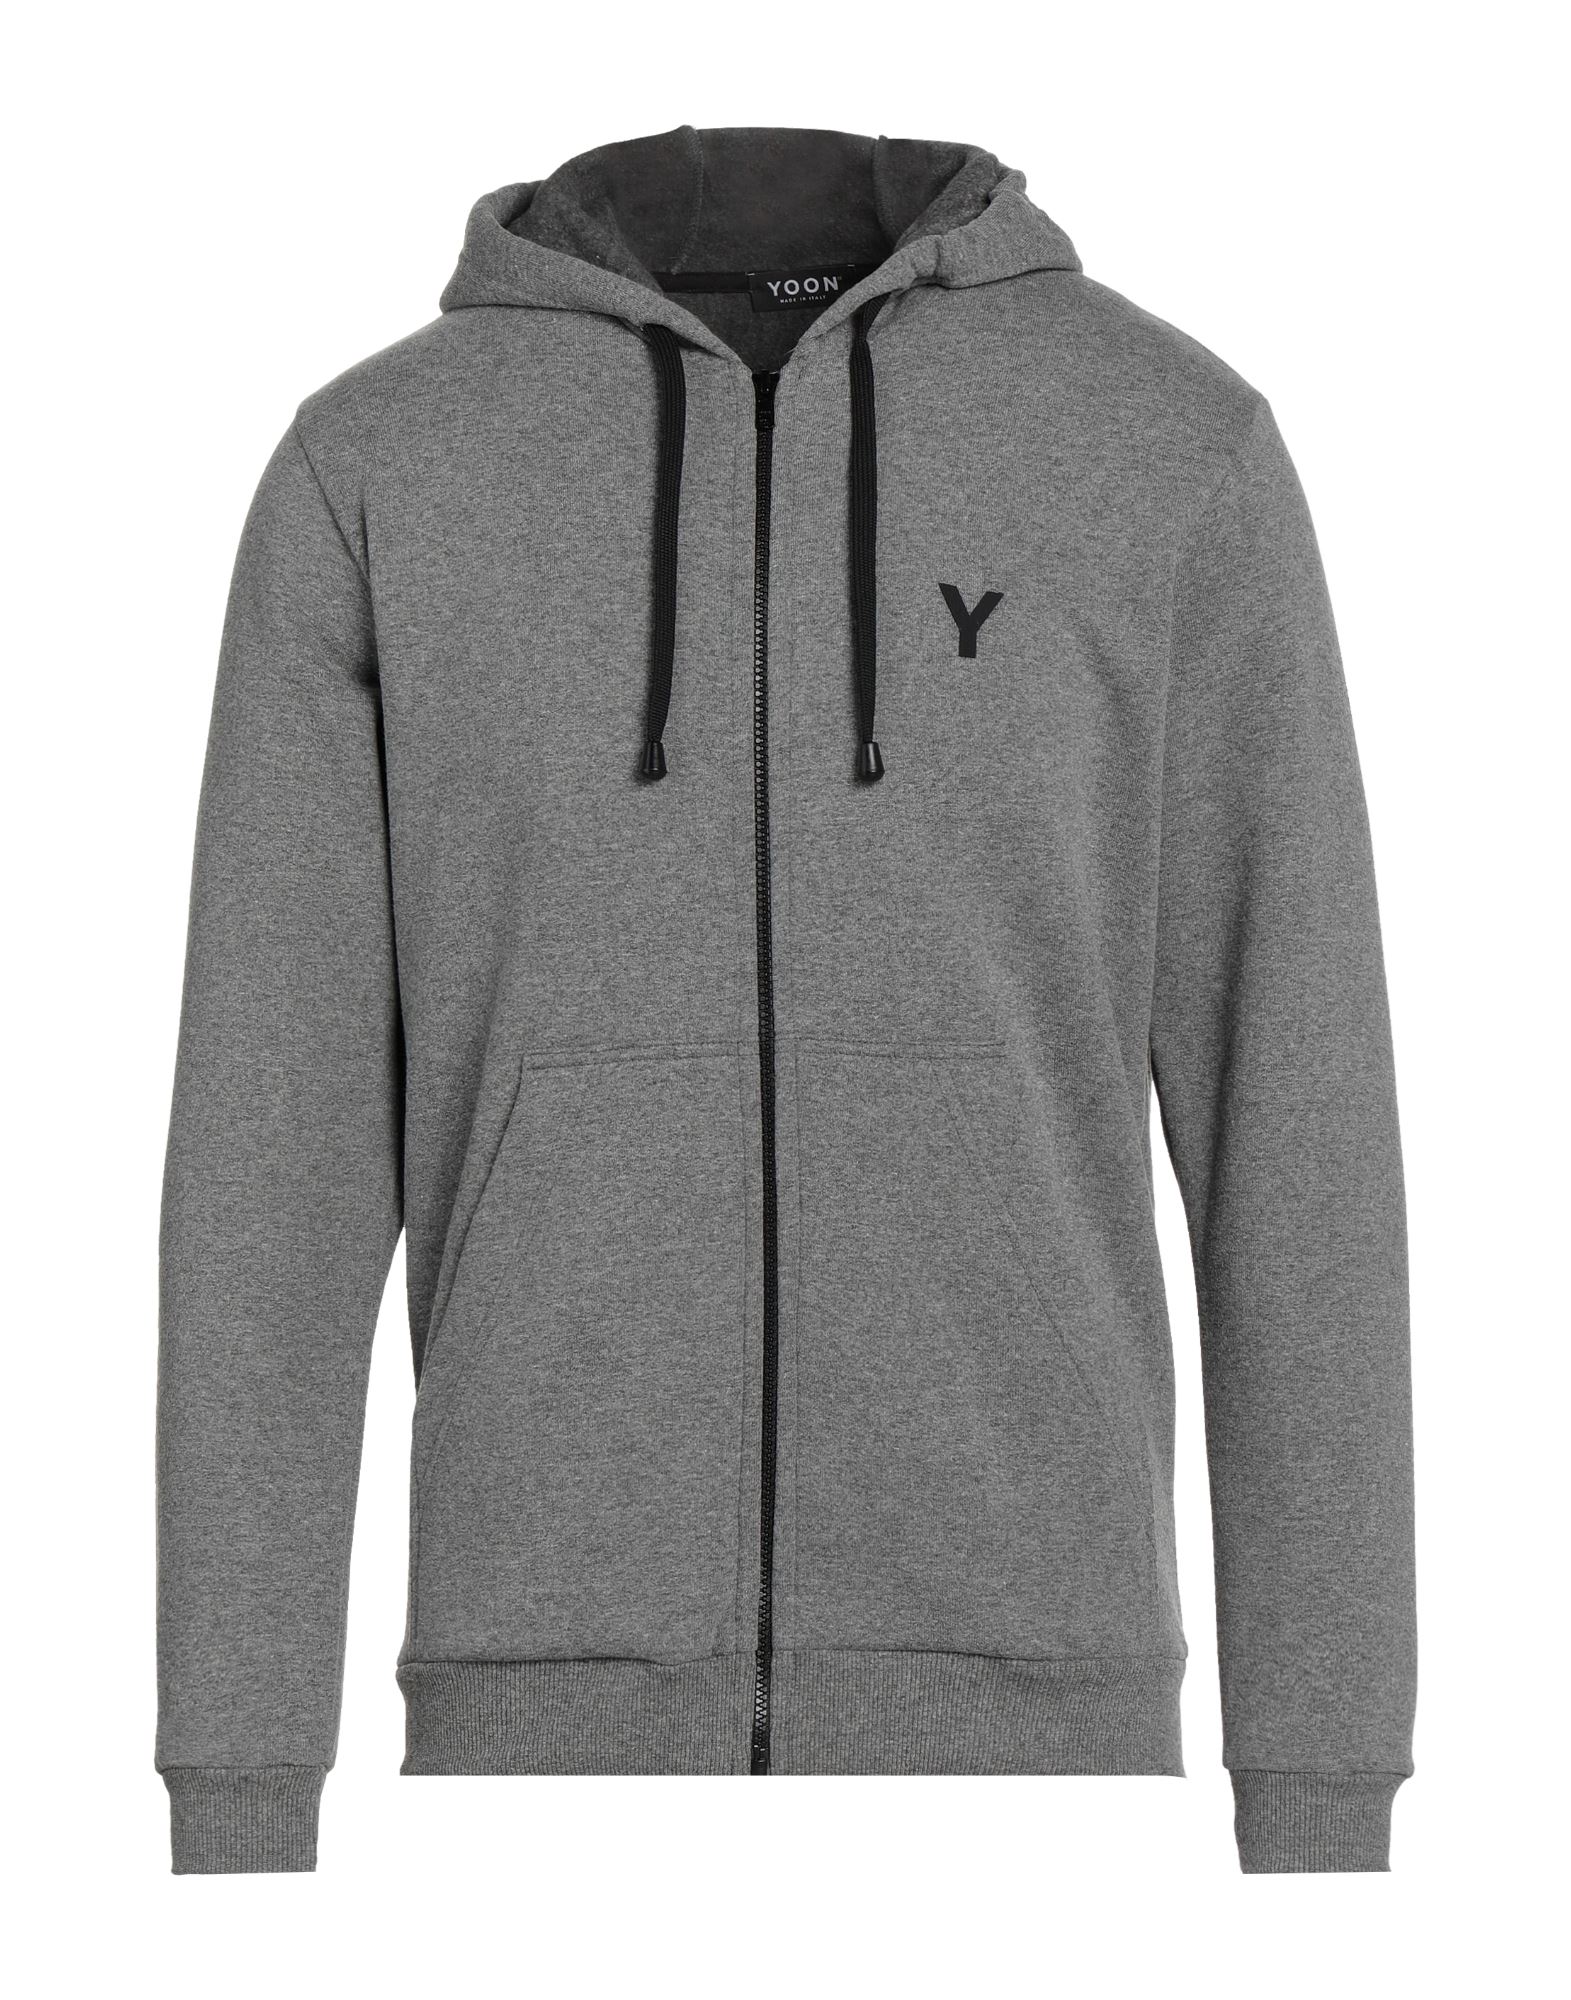 Yoon Sweatshirts In Grey